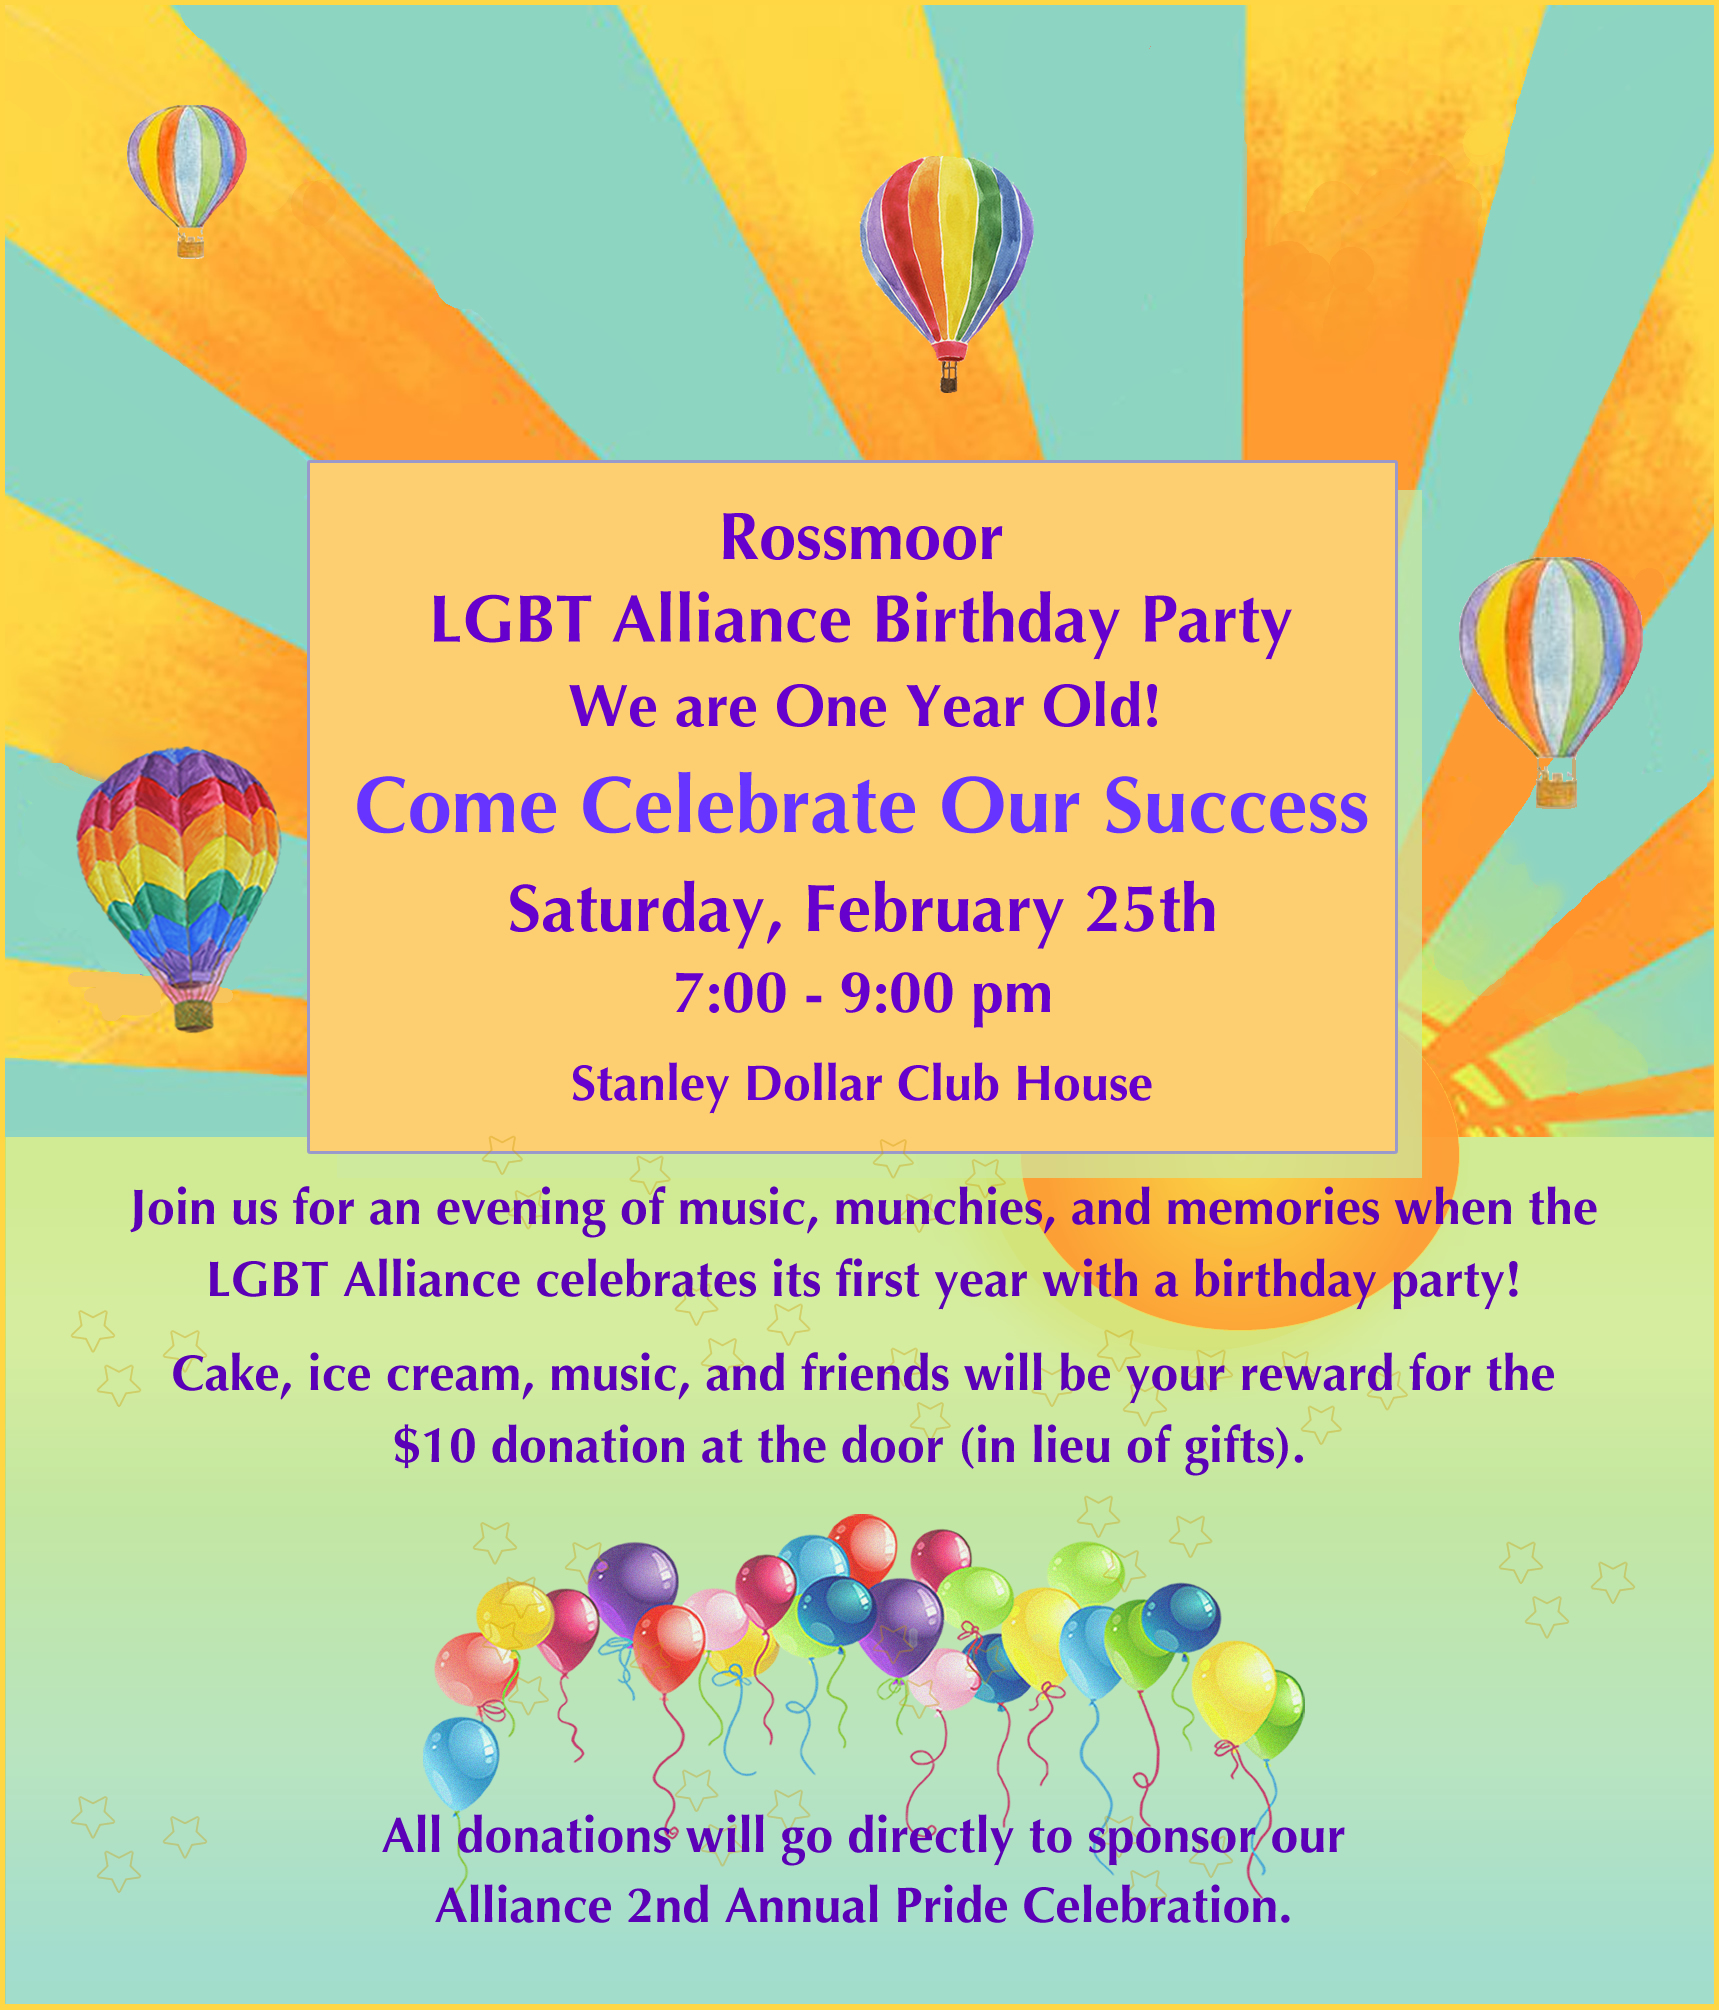 Rossmoor LGBT Alliance